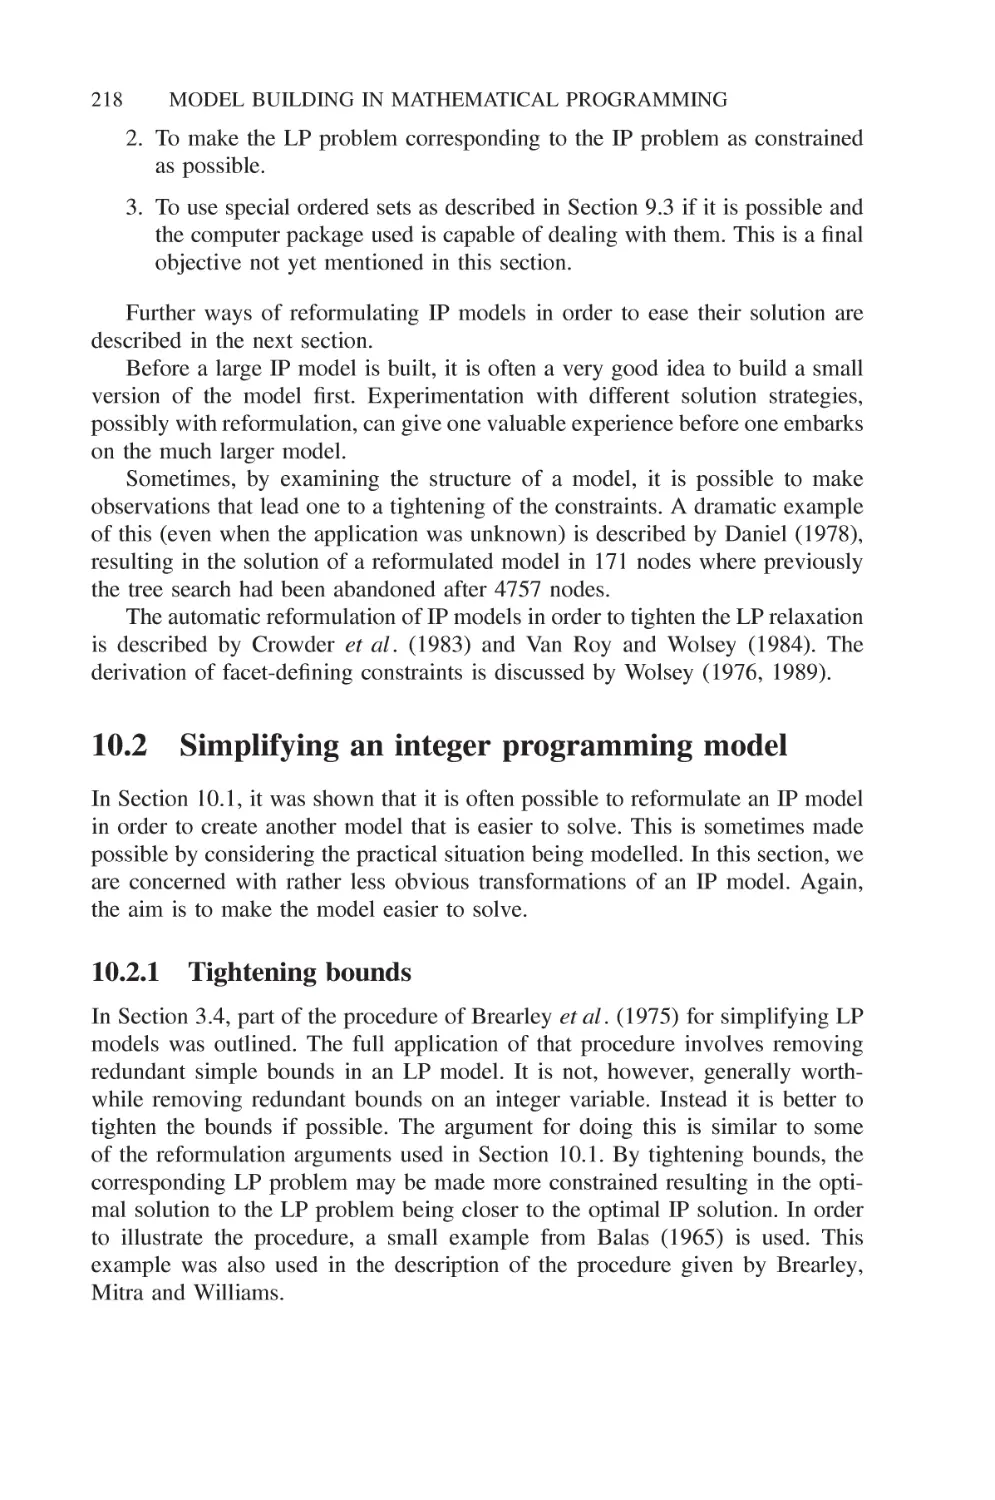 10.2 Simplifying an integer programming model